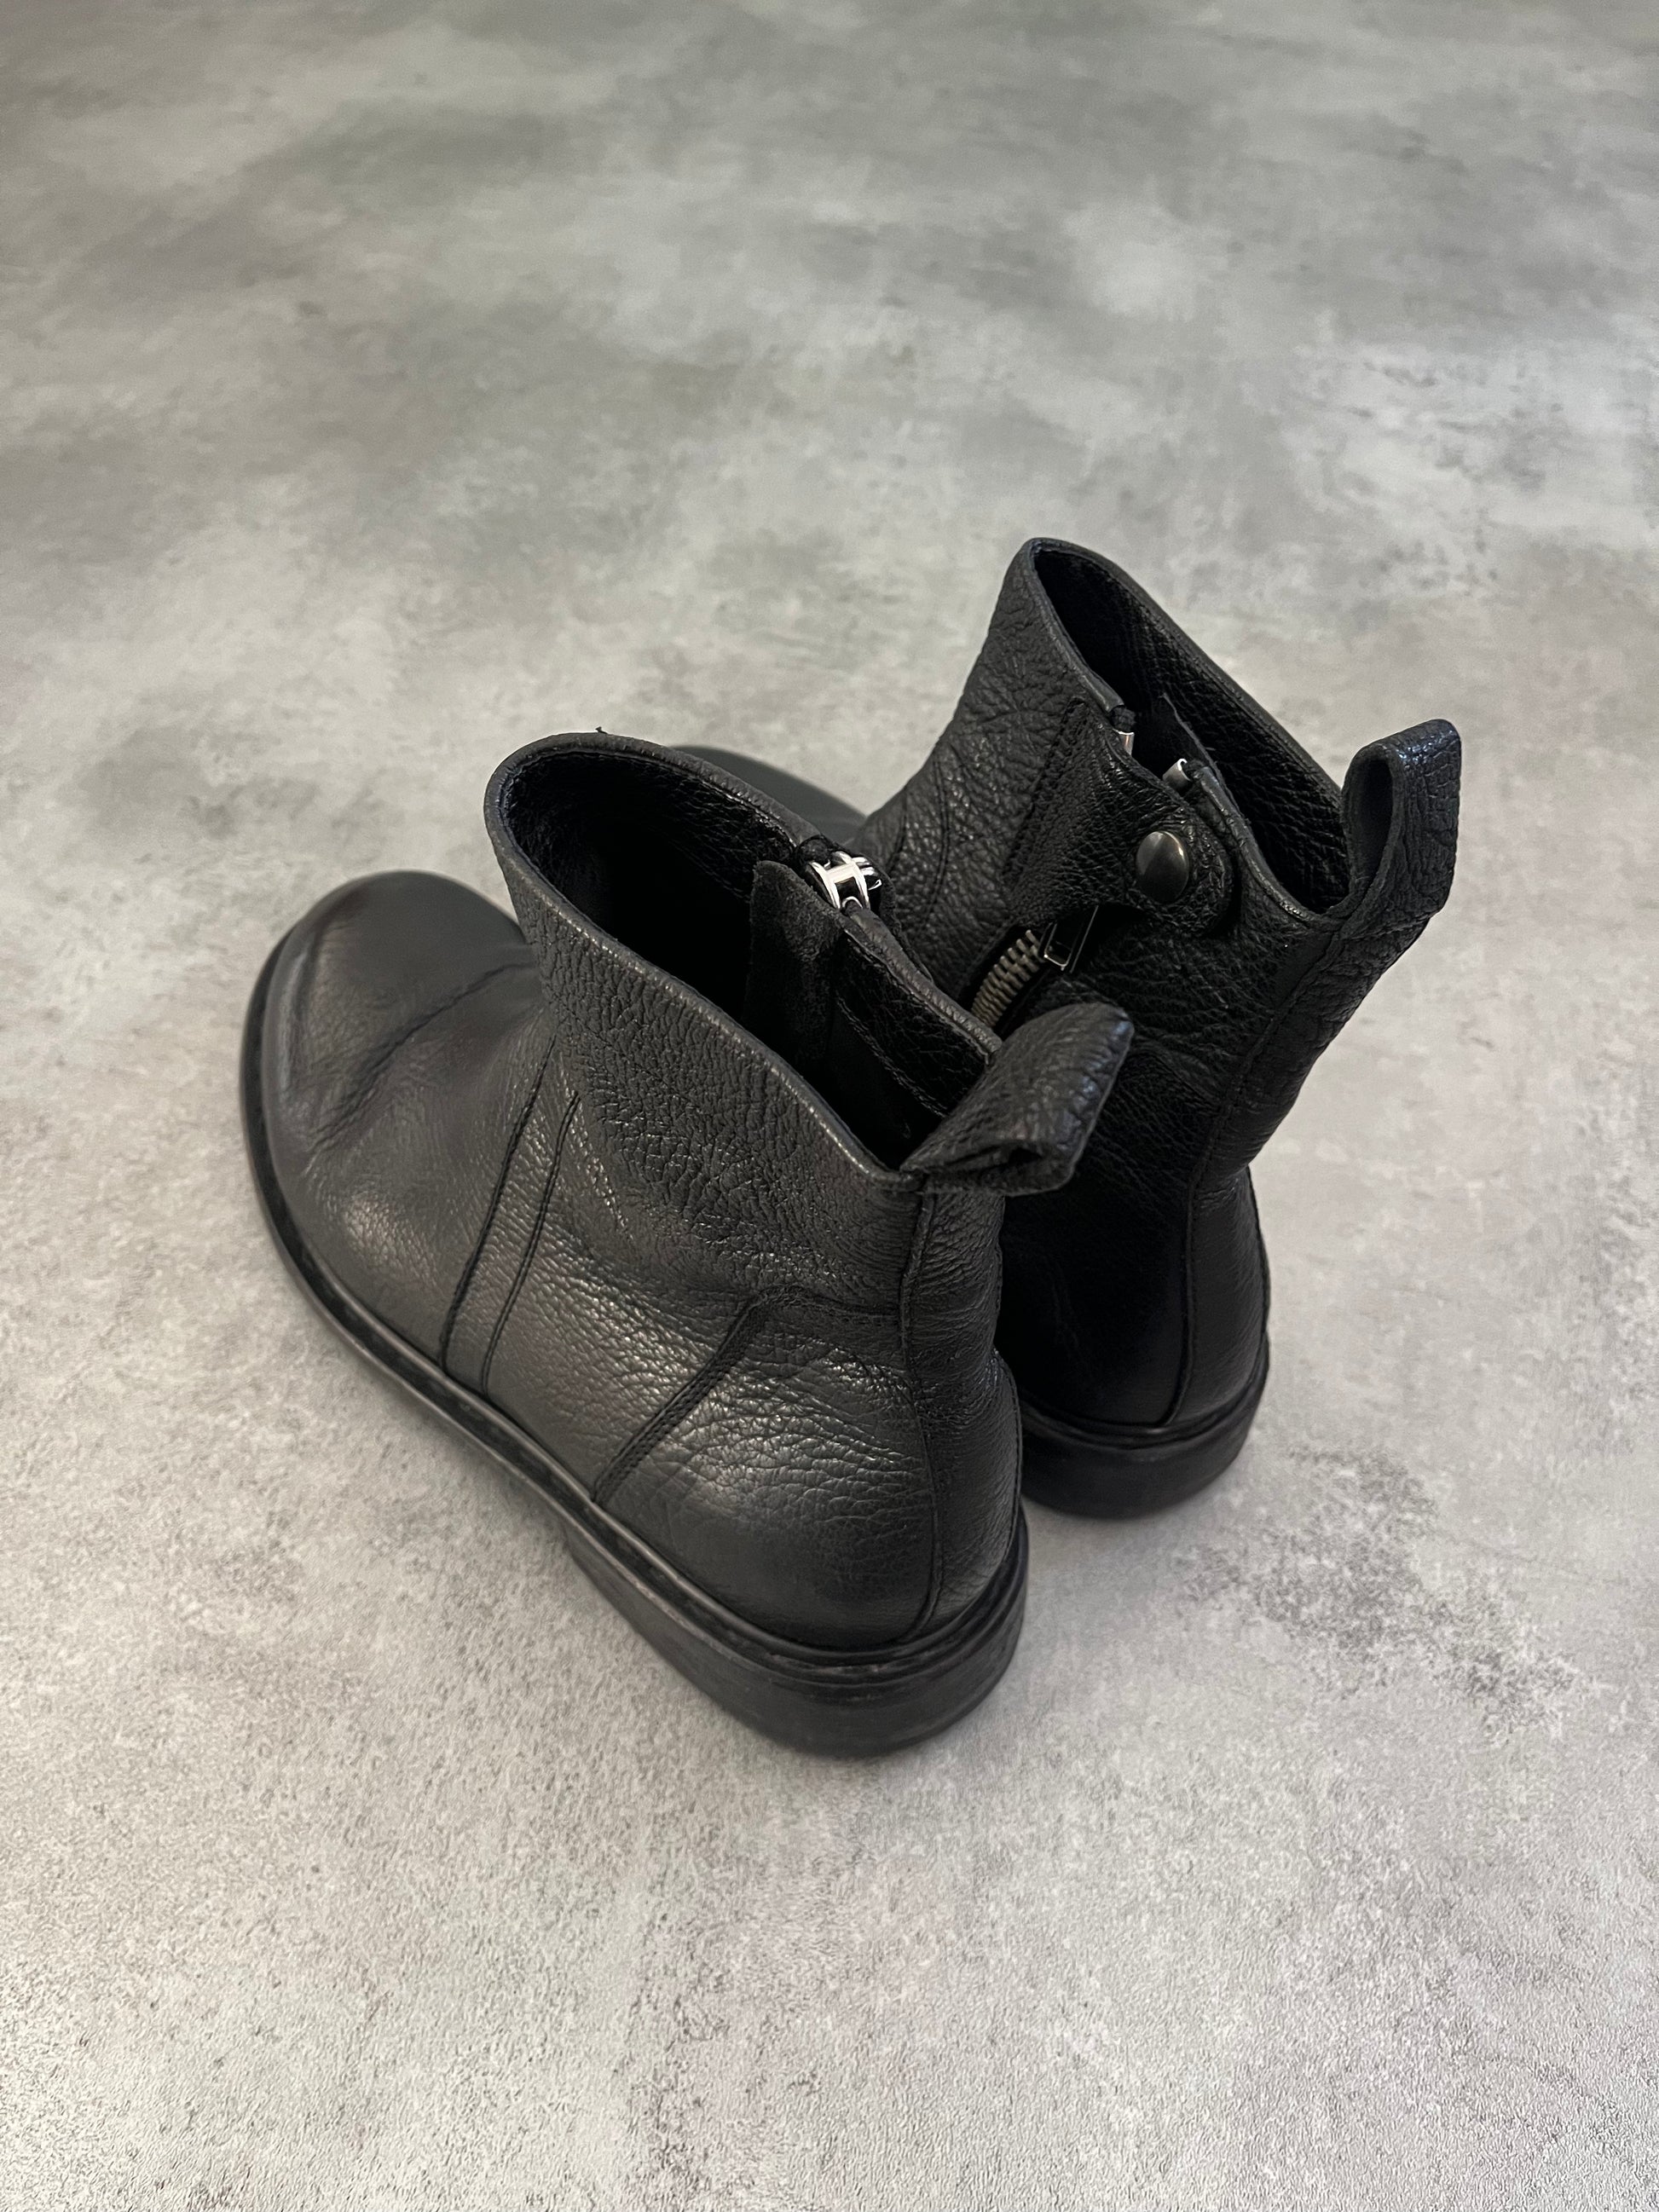 Rick Owens Rotary Zipped Leather Boots (42eu/us8.5)  (42) - 6